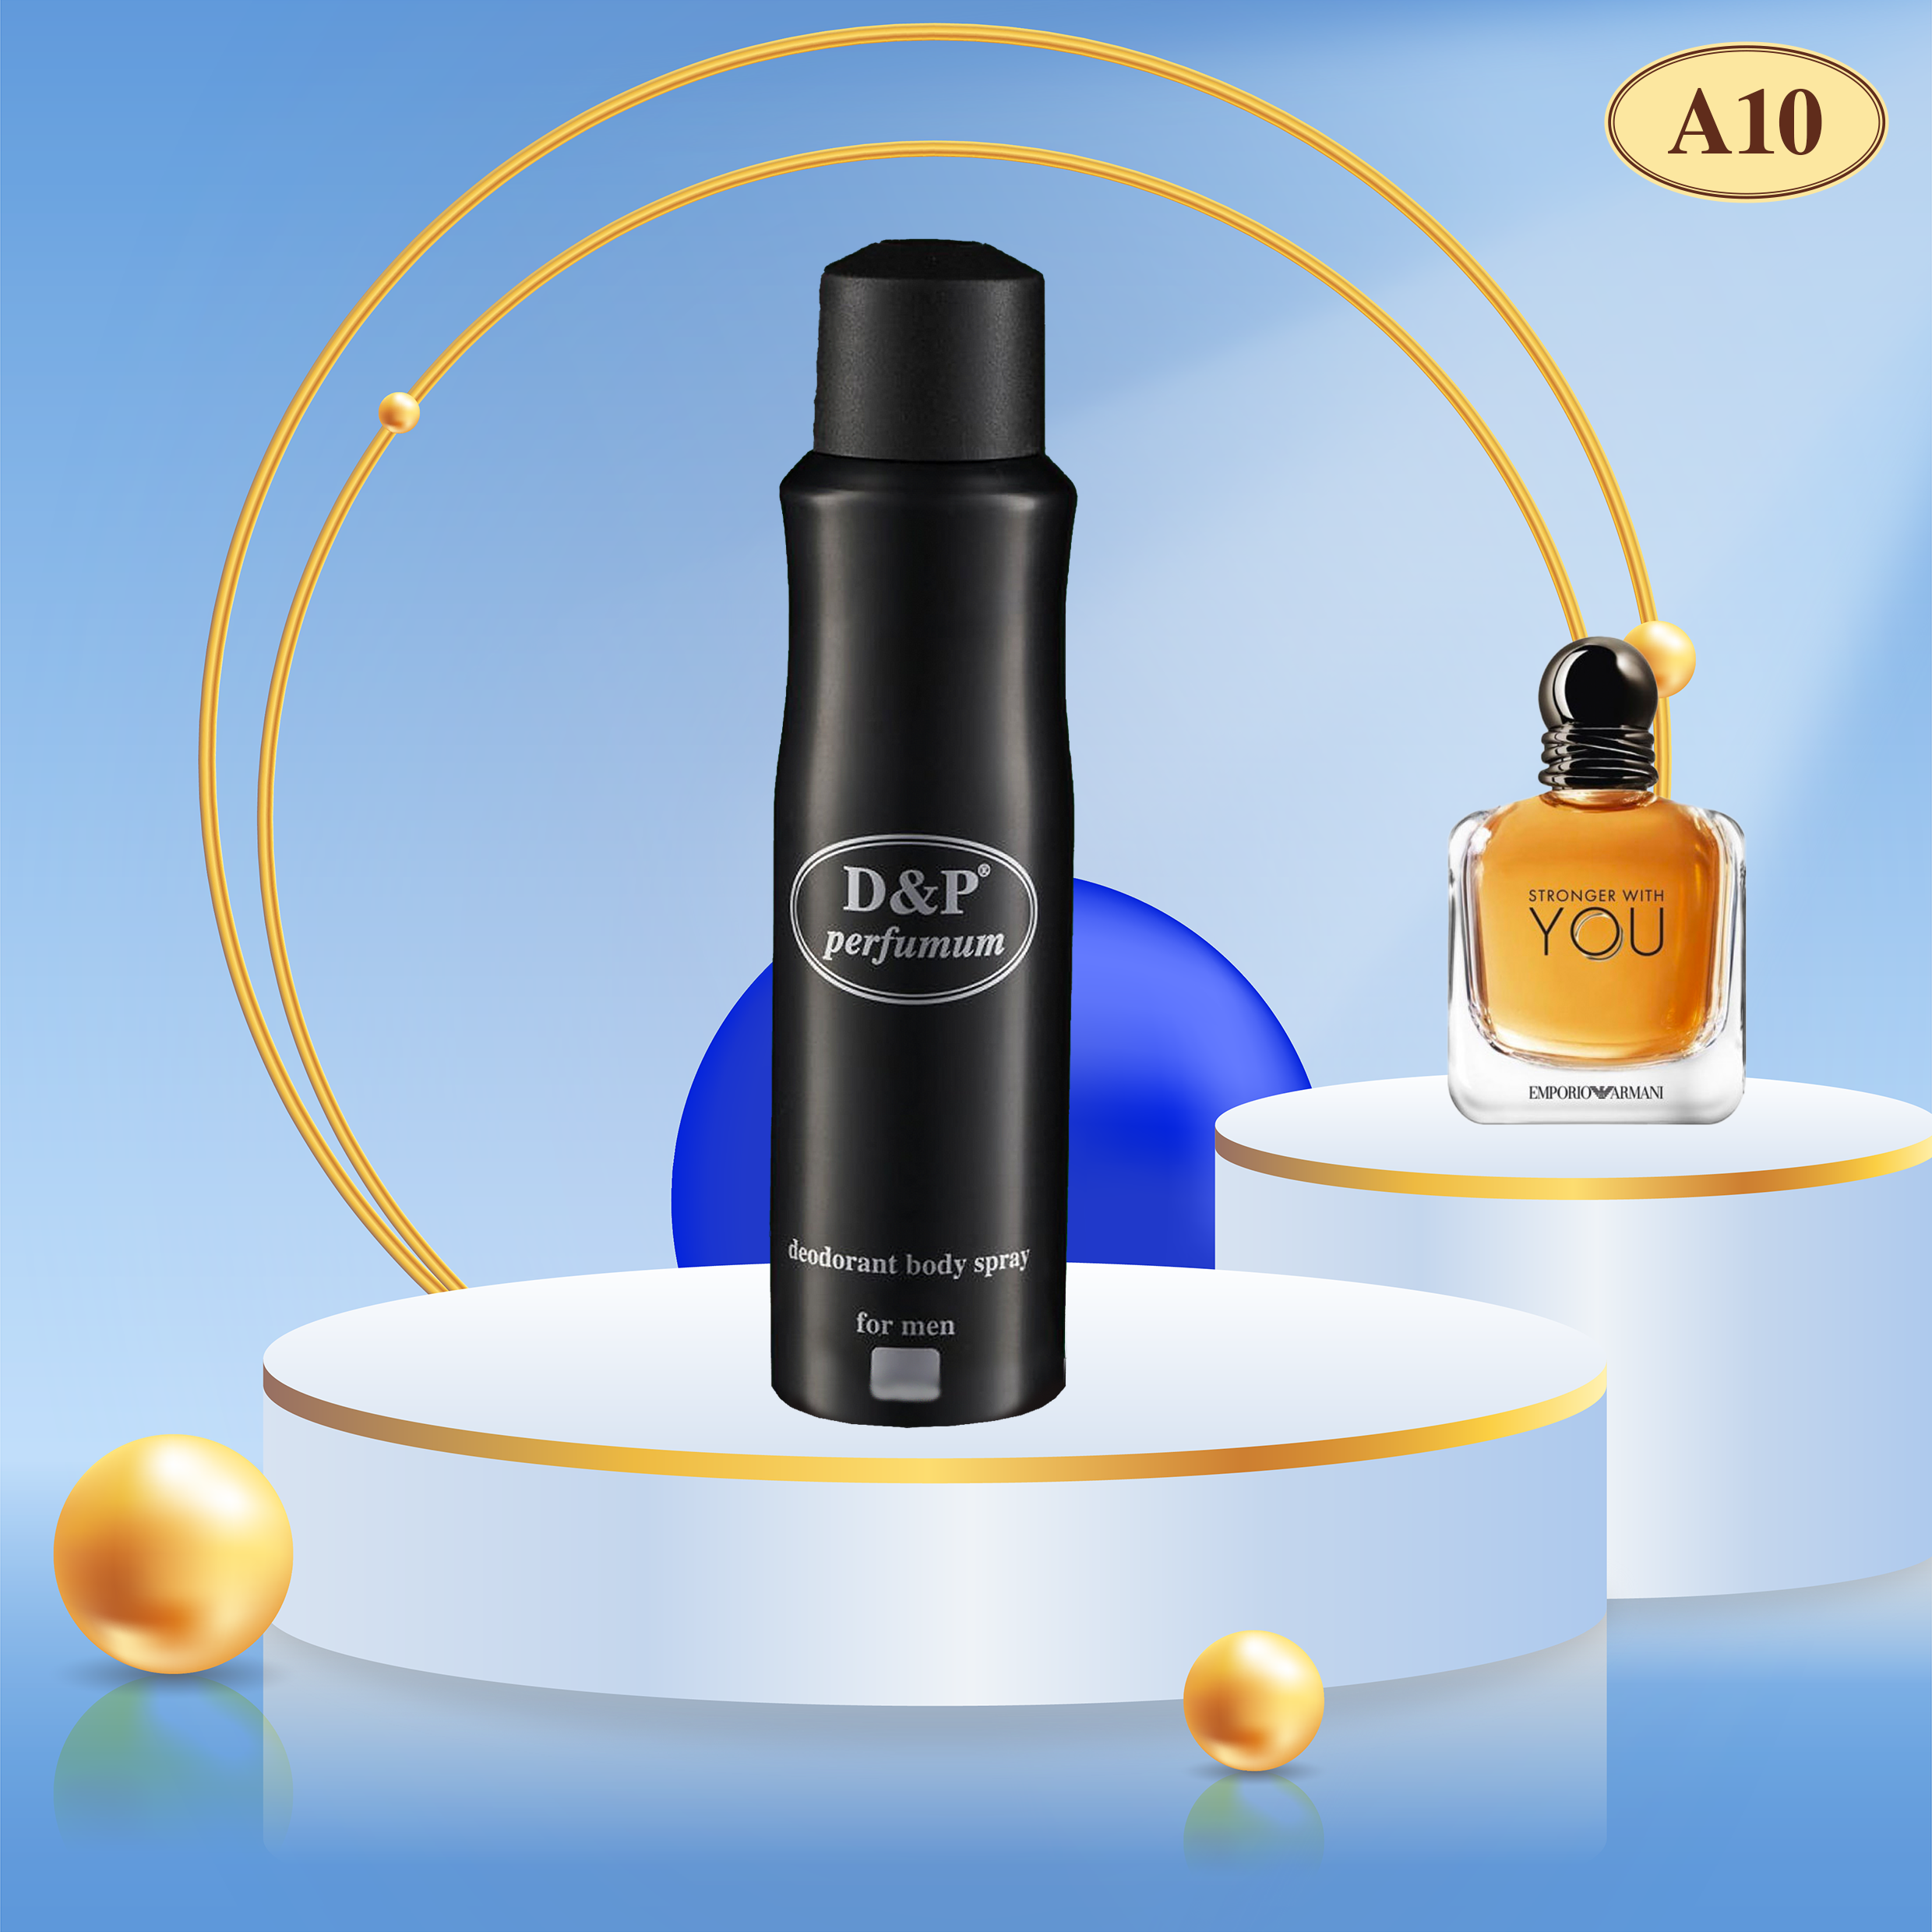 Bleu de chanel for men - eau de parfum, 150ml price in Egypt,  Egypt